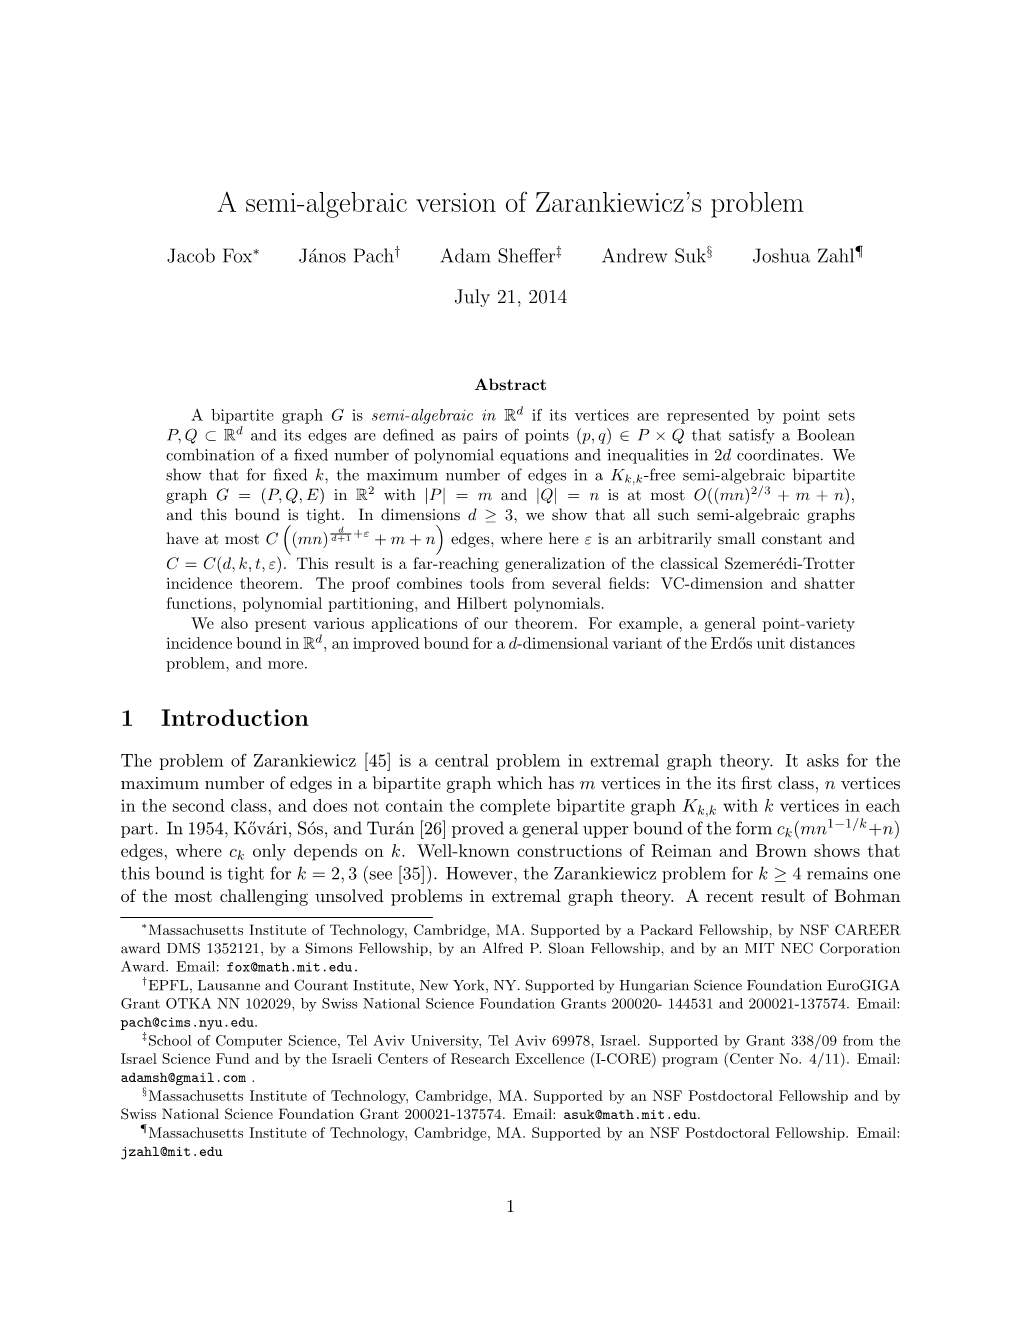 A Semi-Algebraic Version of Zarankiewicz's Problem